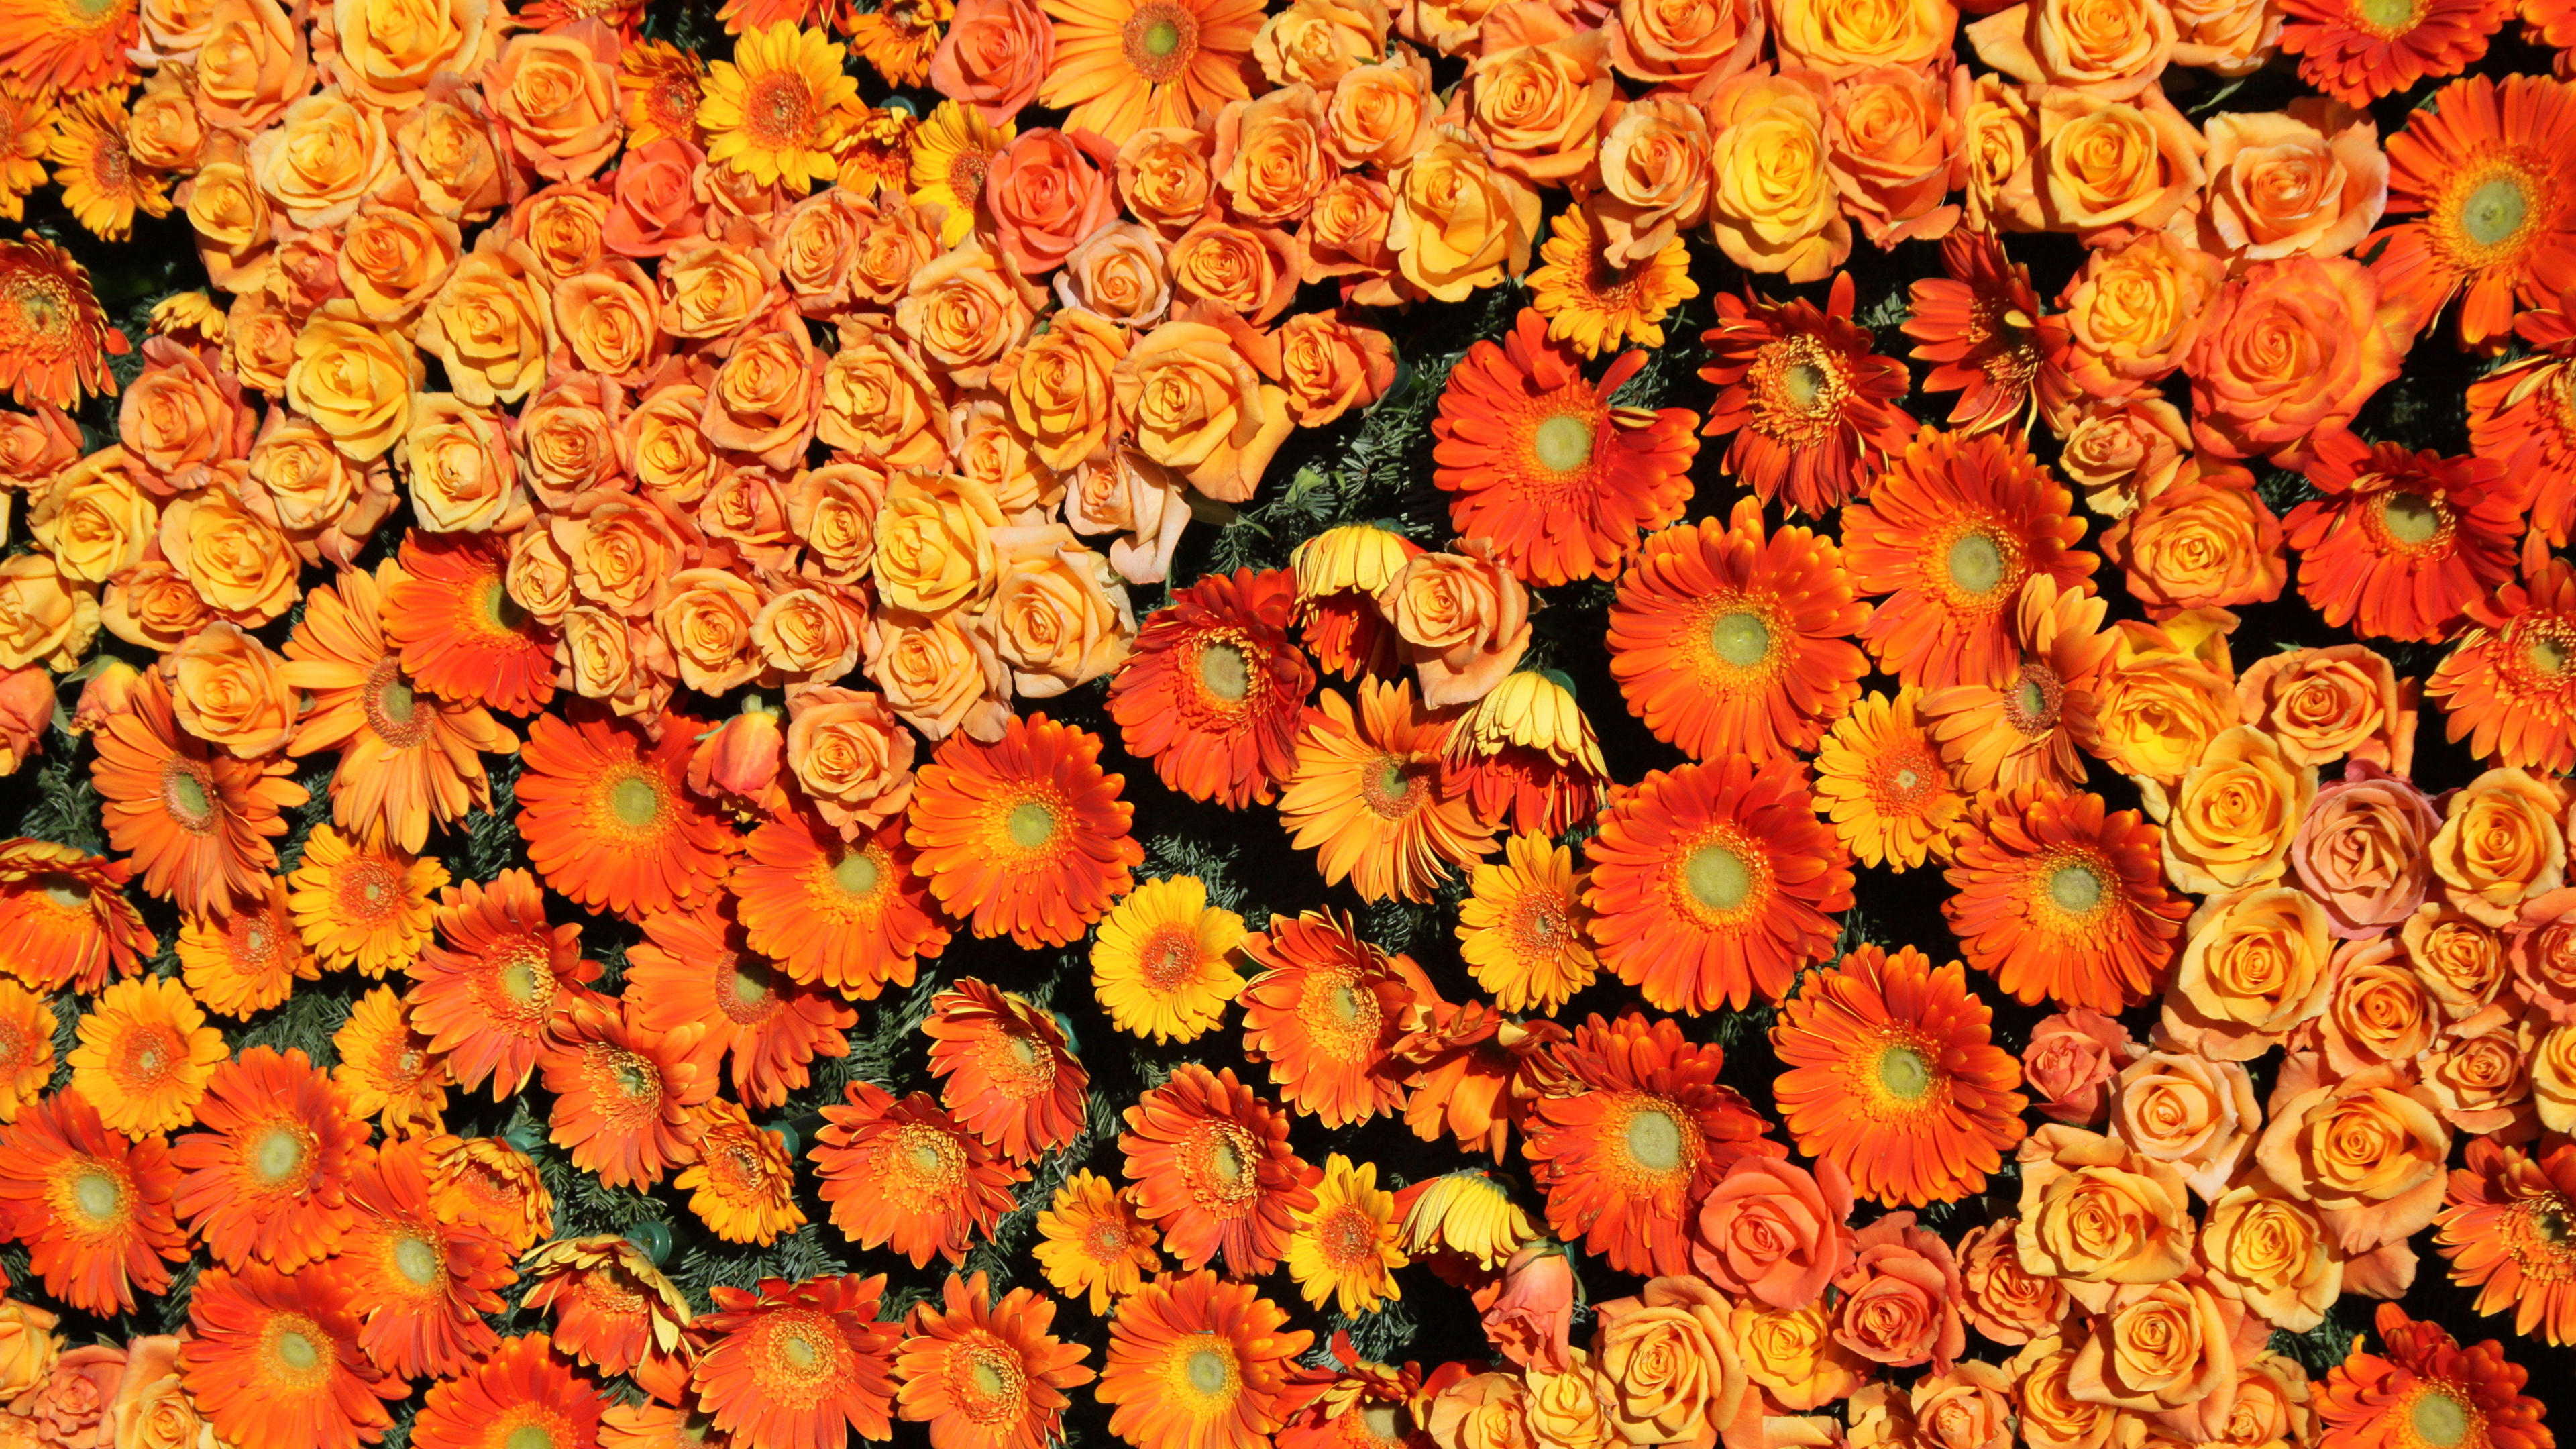 壁紙 3840x2160 バラ ガーベラ たくさん テクスチャー オレンジ色 花 ダウンロード 写真